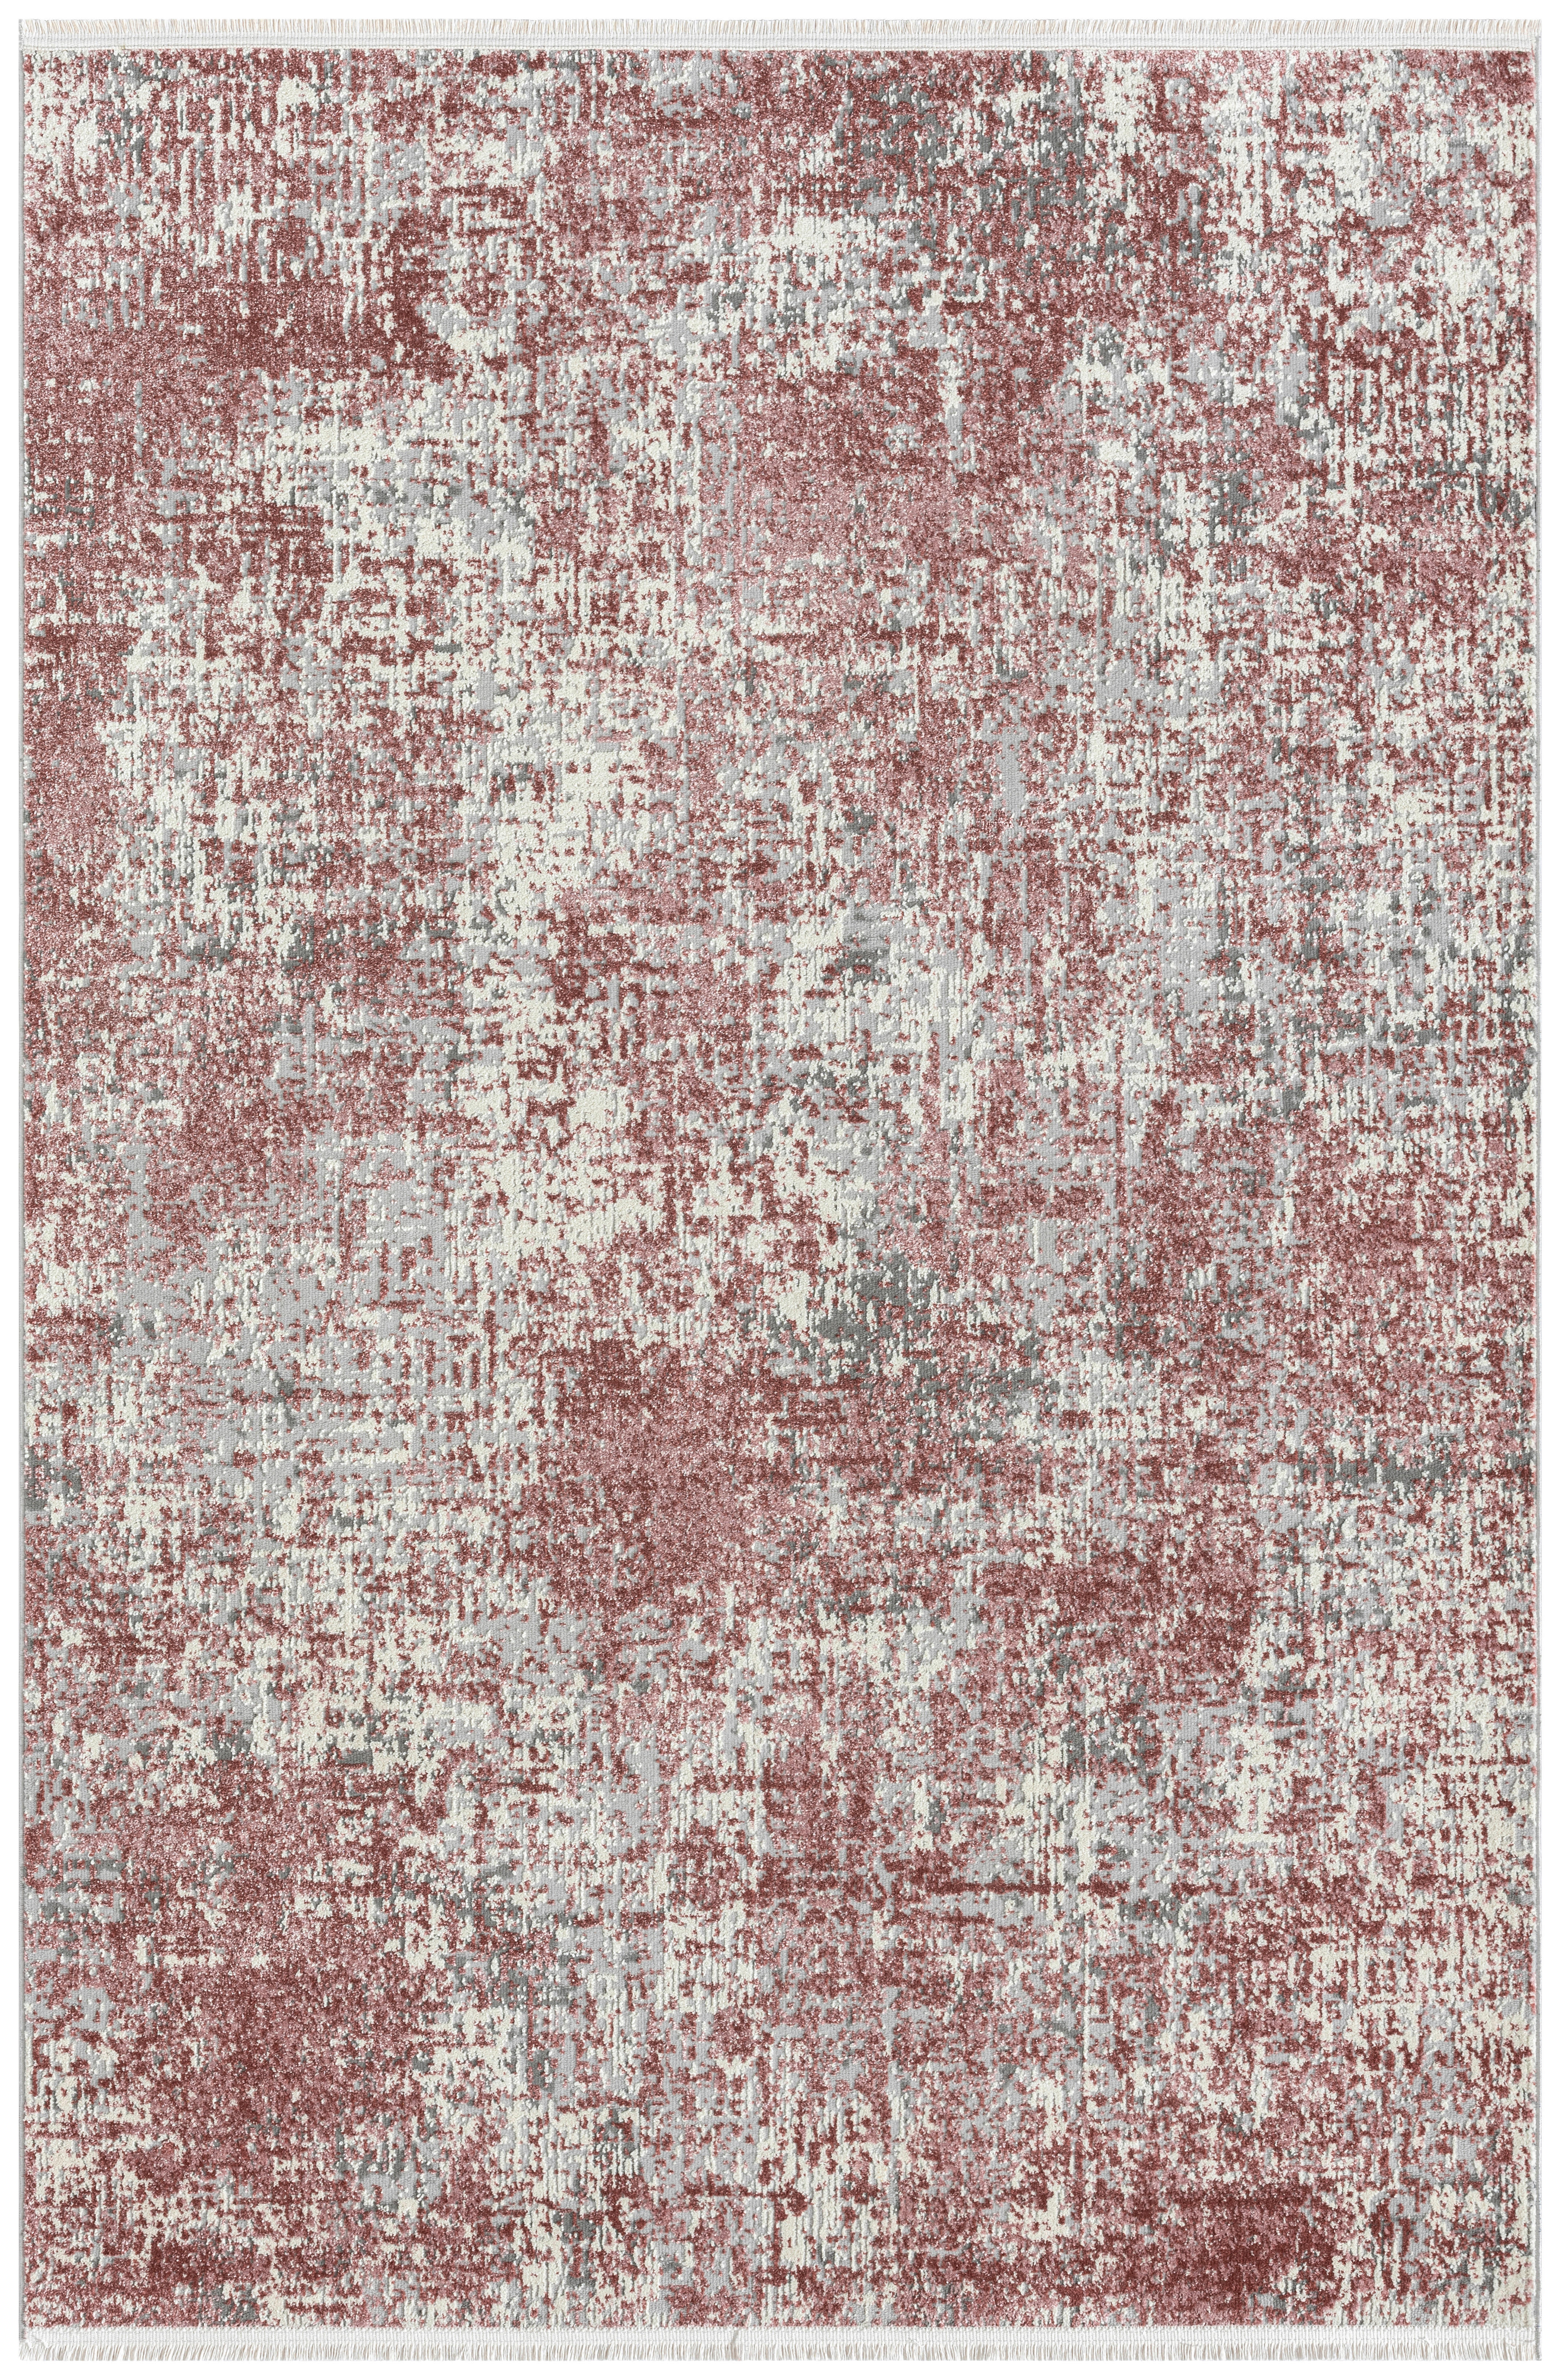 WEBTEPPICH 80/150 cm  - Hellgrau/Rosa, Design, Textil (80/150cm) - Novel